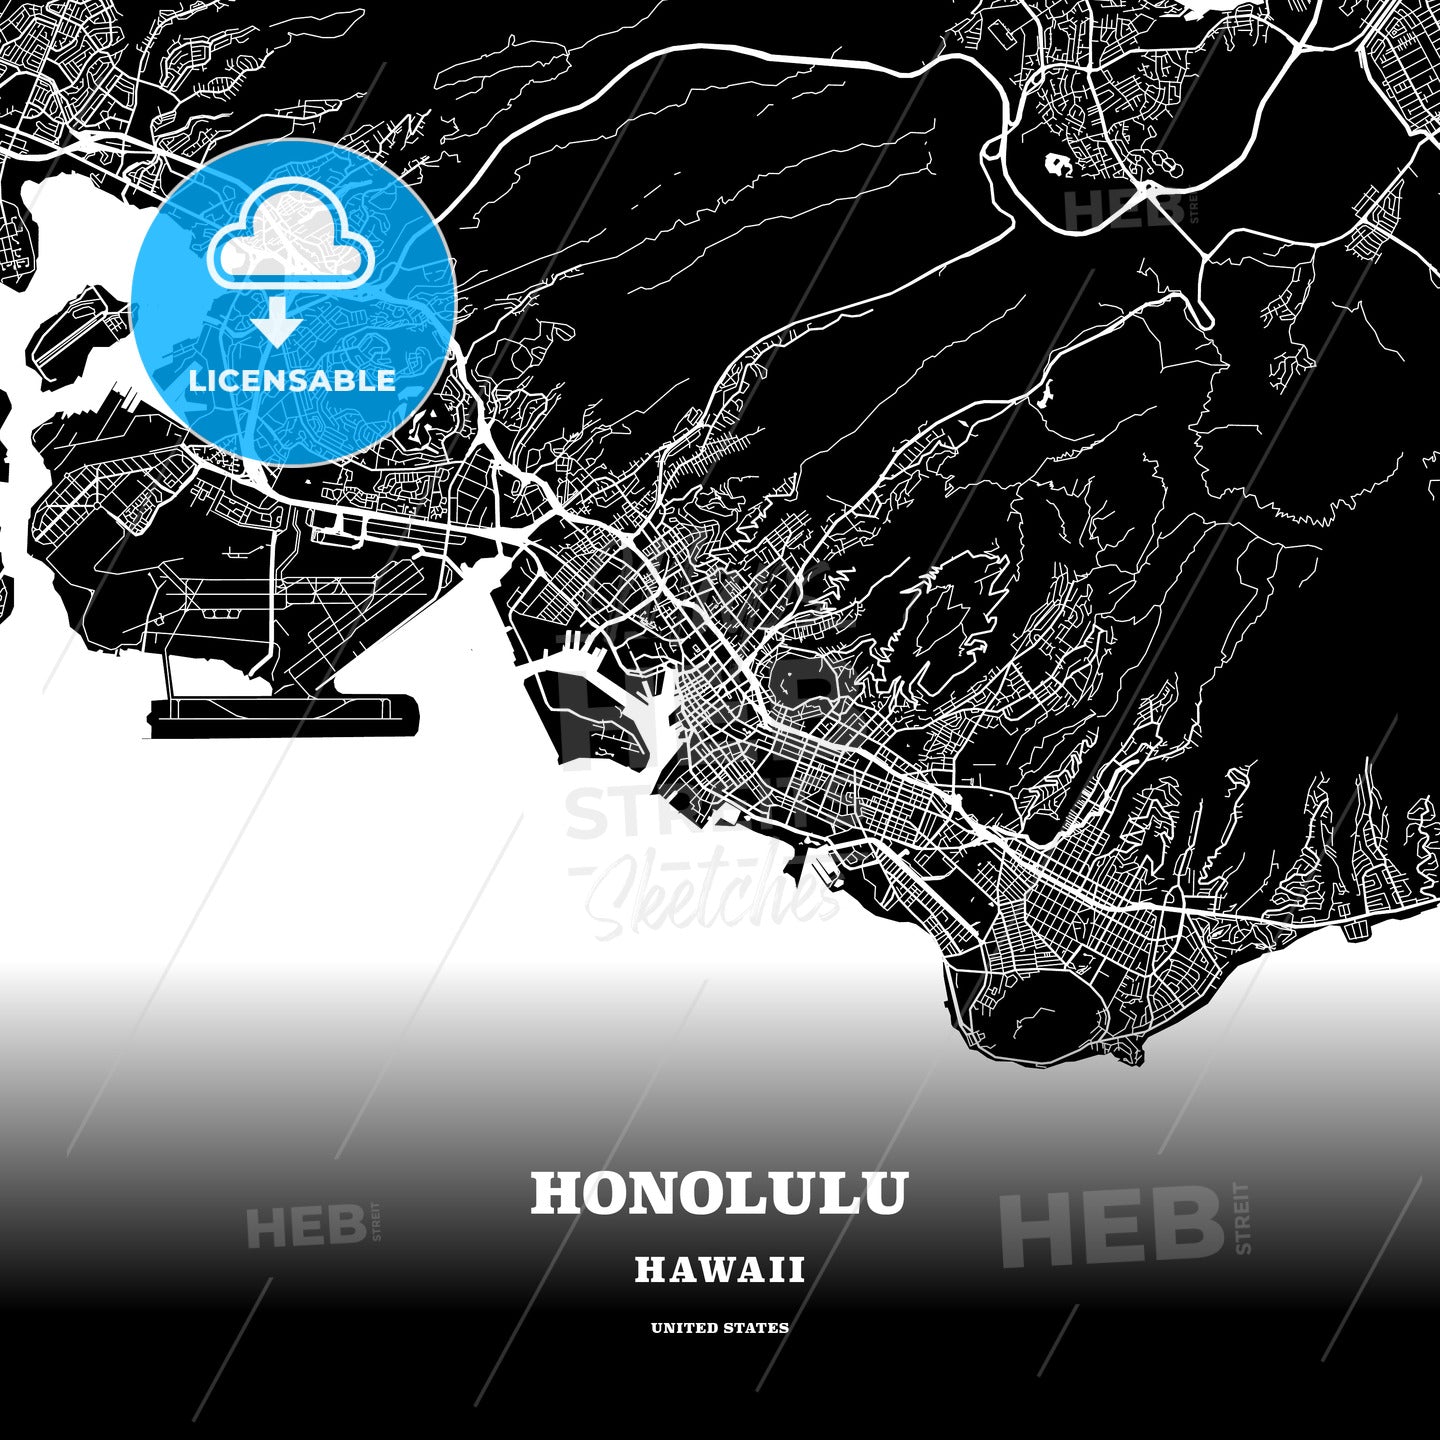 Honolulu, Hawaii, USA map